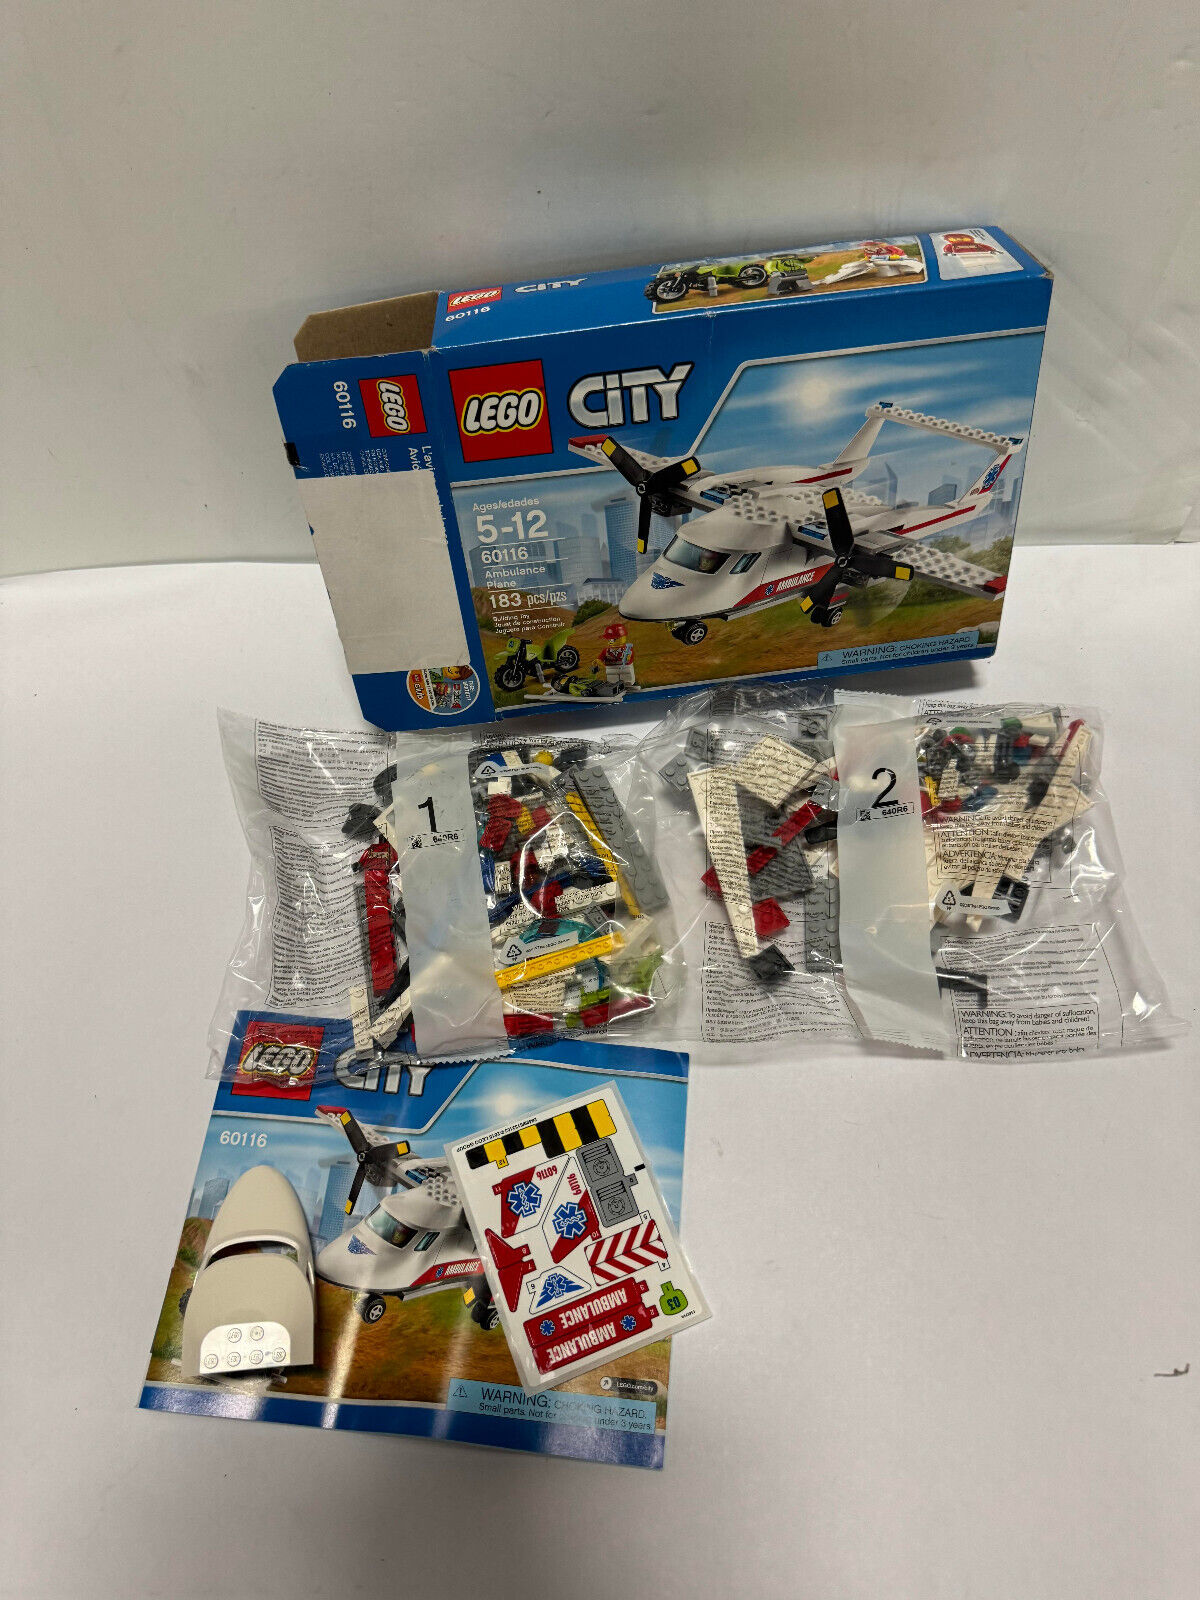 New LEGO 60116 CITY Ambulance Plane 183pcs New Opened Box Bags Sealed